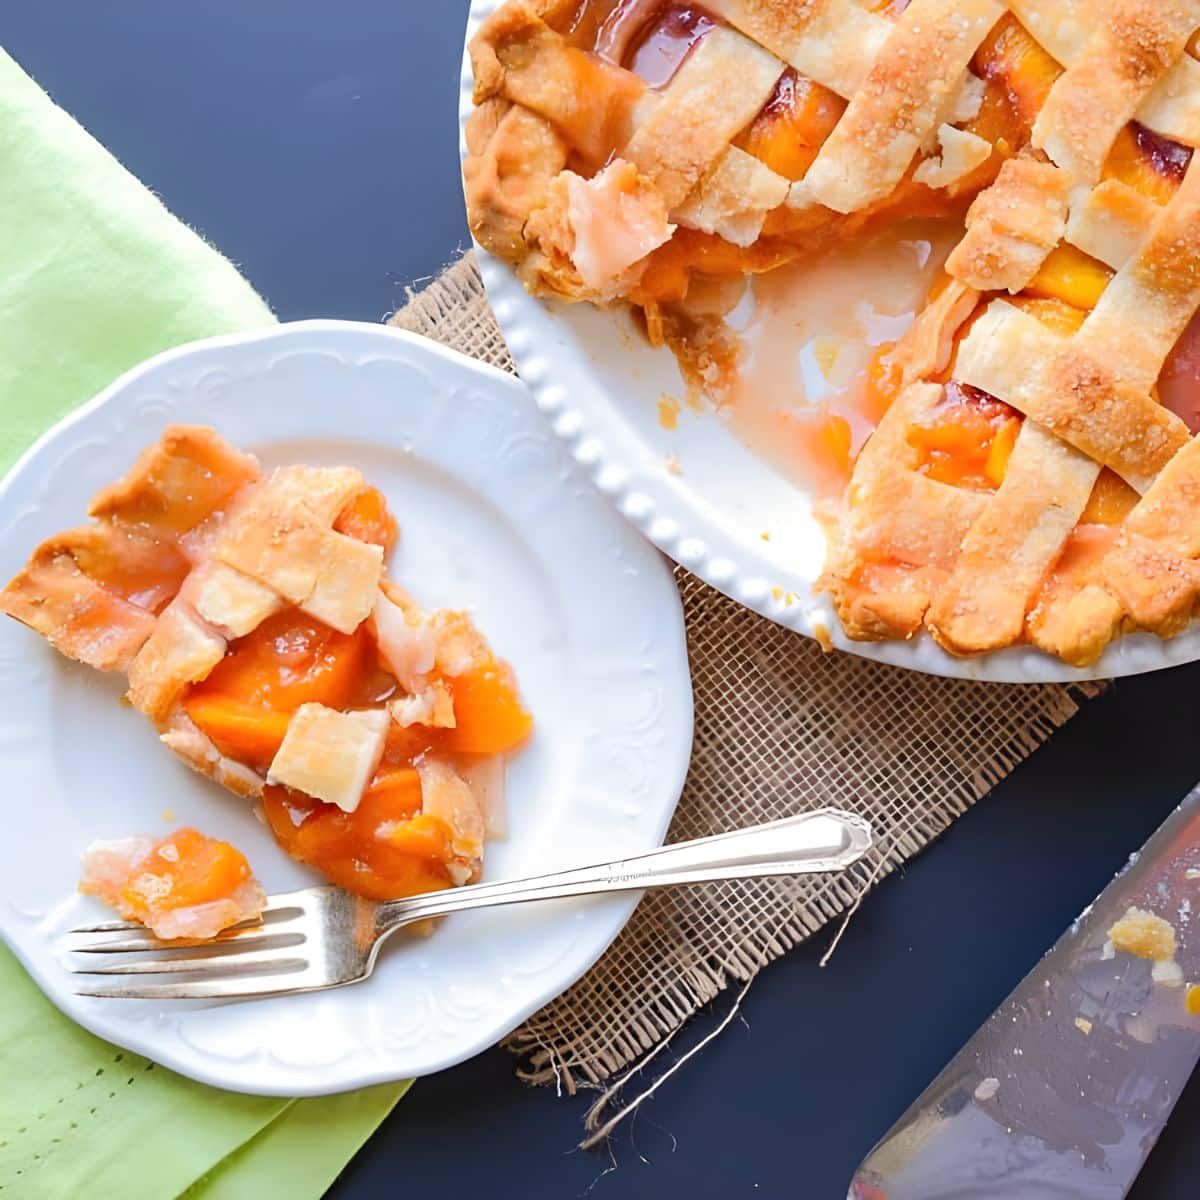 Peach pie with lattice crust.